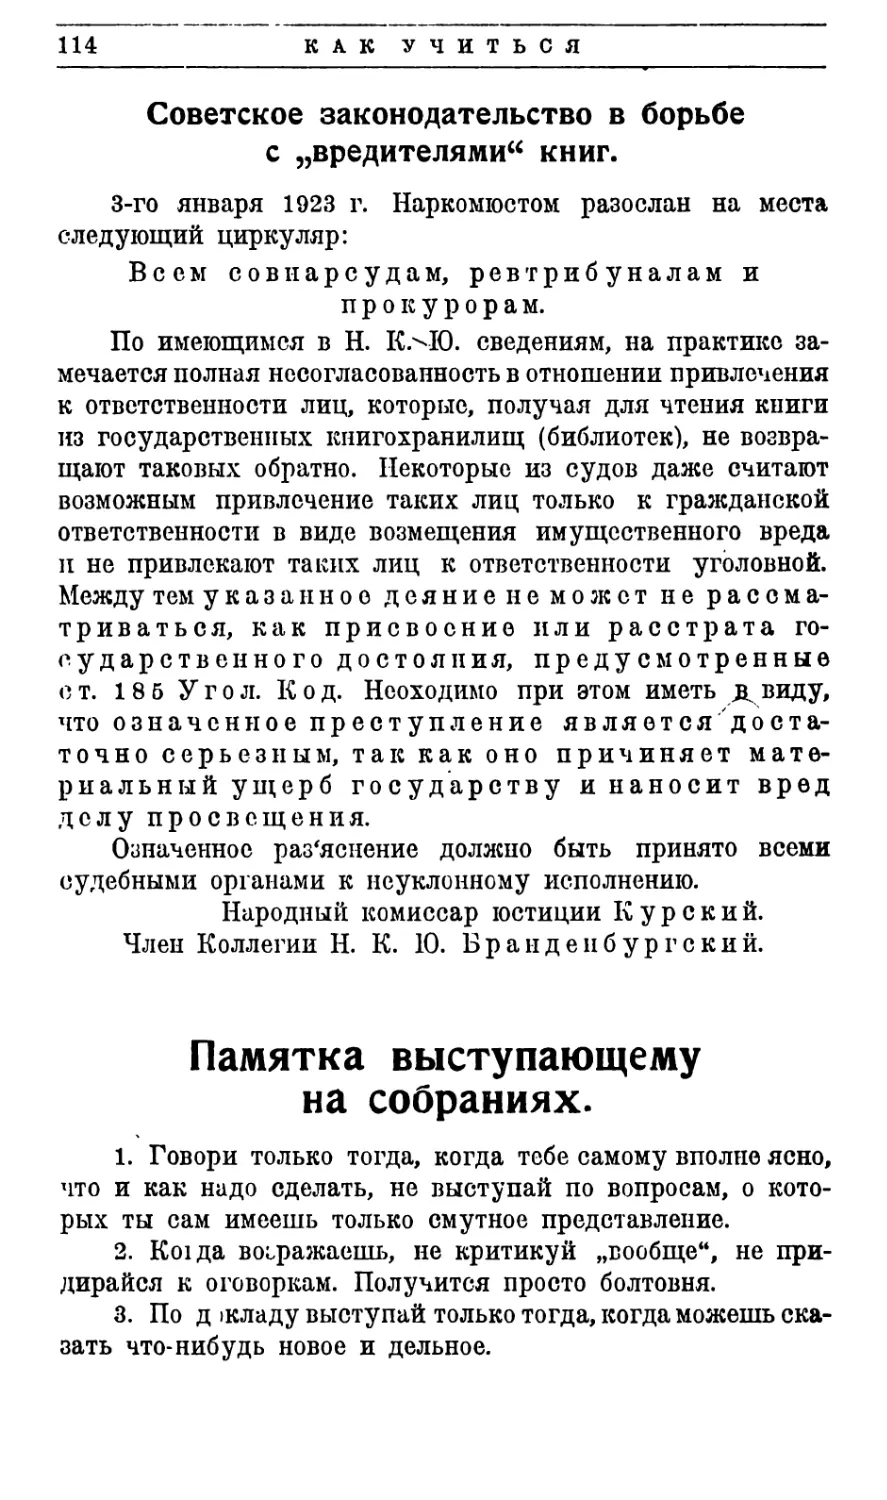 Советское законодательство в борьбе с вредителями книг
Памятка выступающему на собраниях